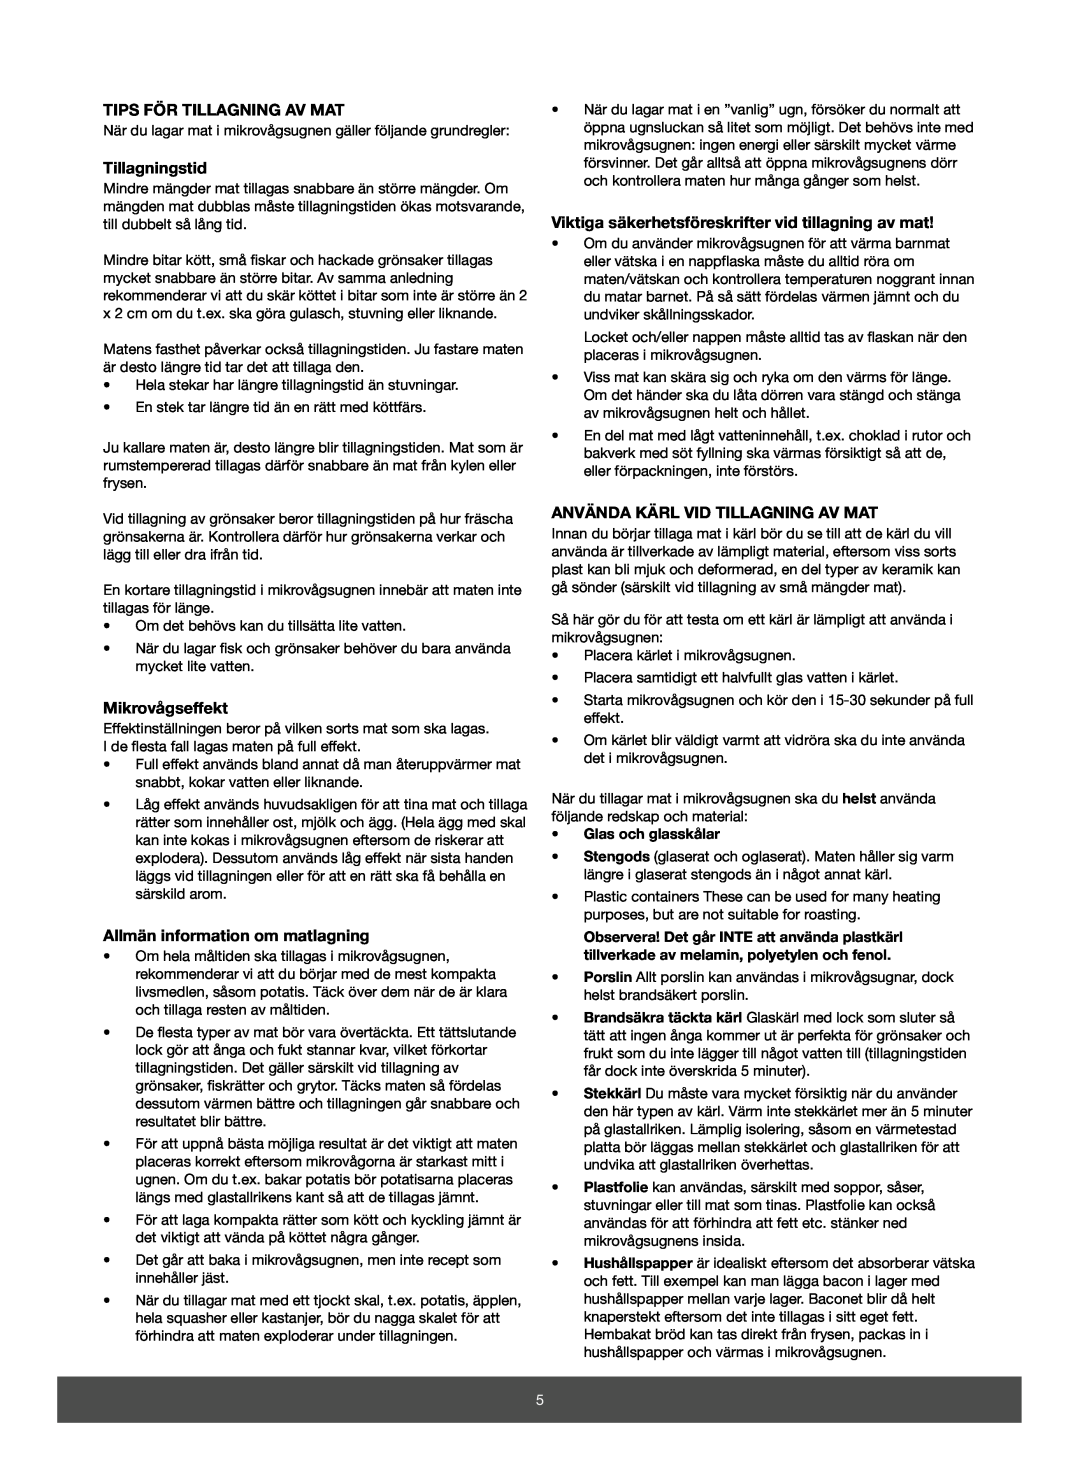 Melissa 653-082 manual Tips För Tillagning Av Mat, Tillagningstid, Mikrovågseffekt, Allmän information om matlagning 